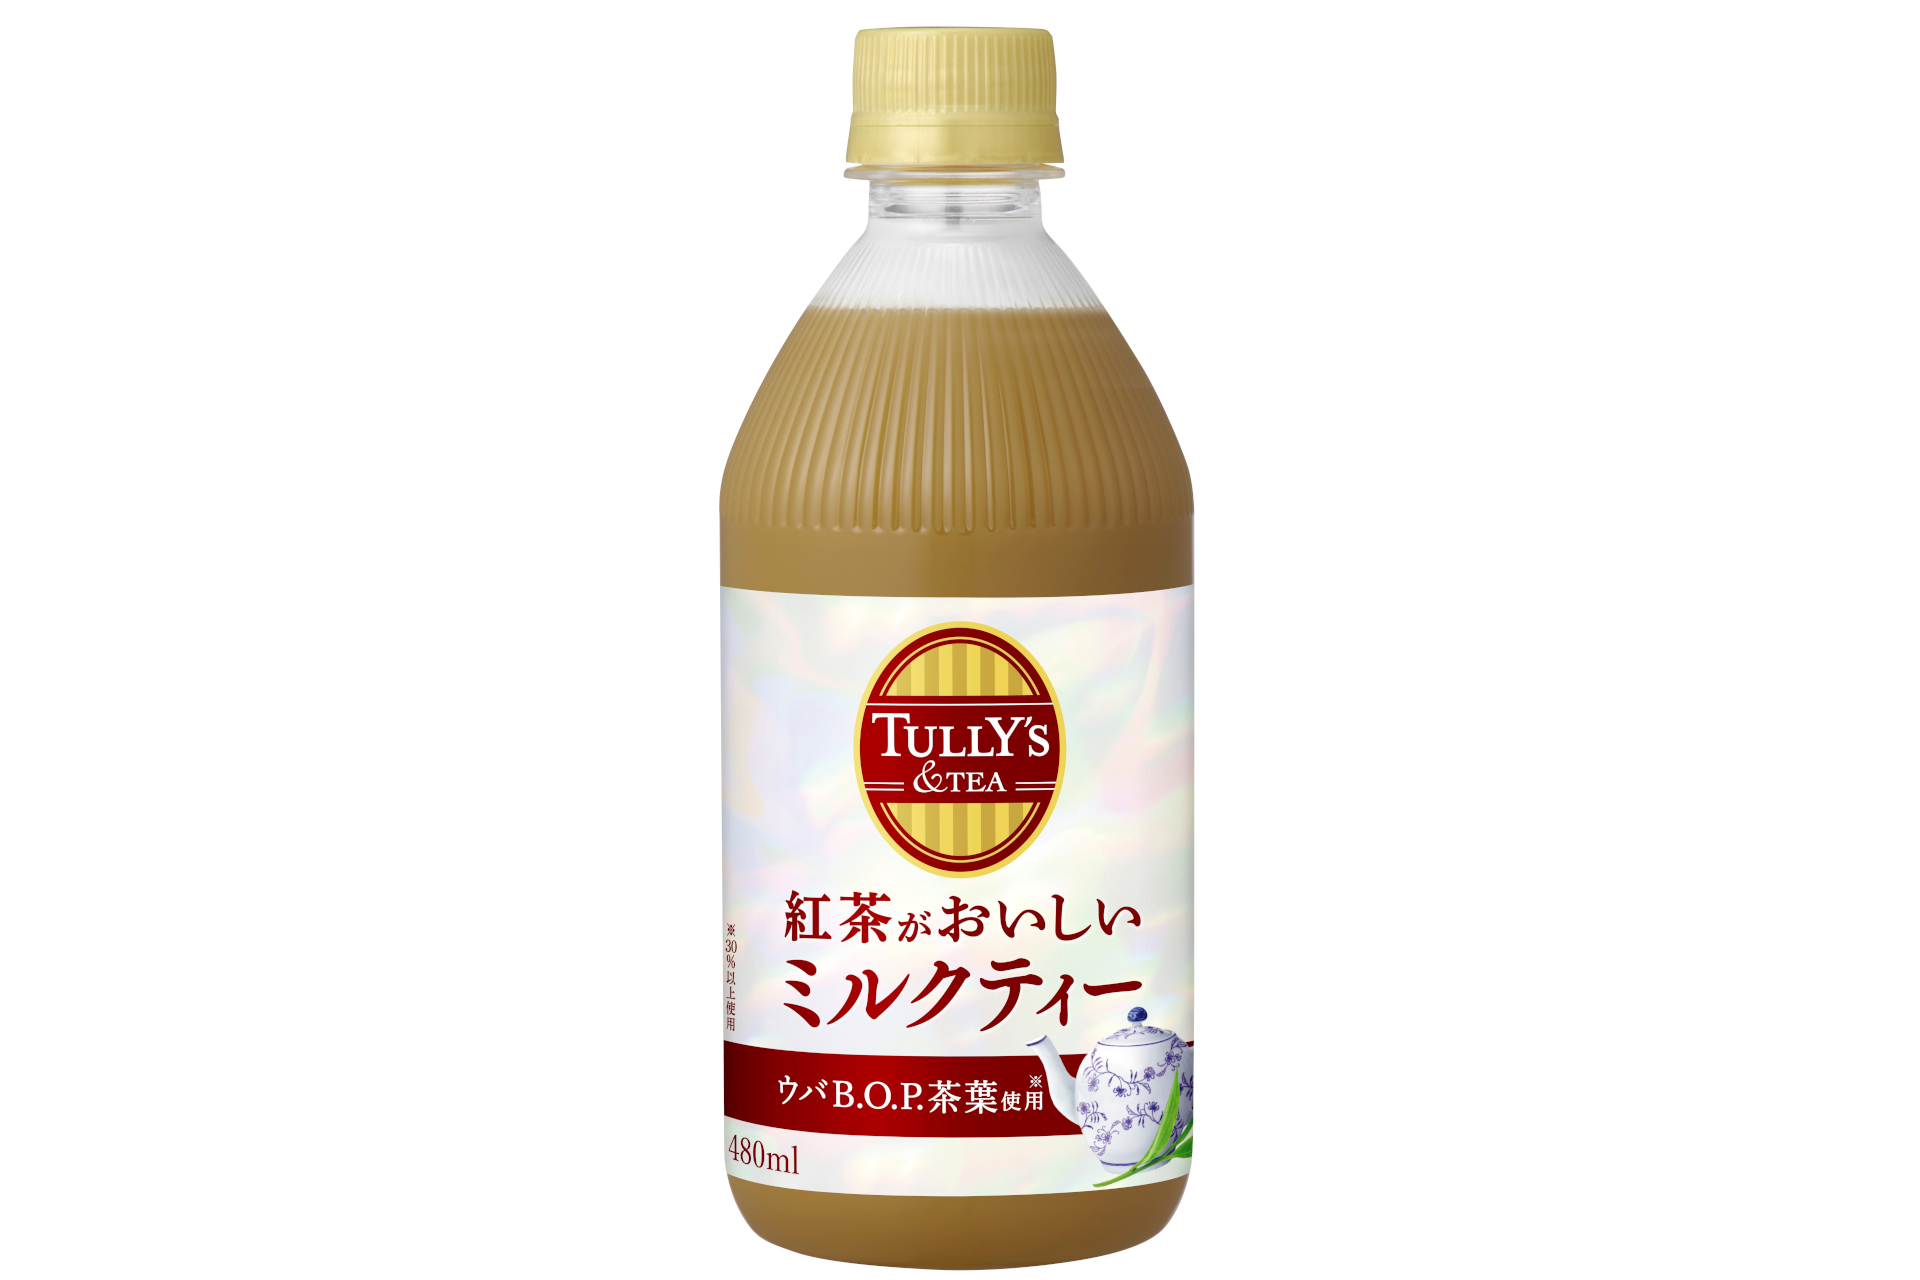 伊藤園、お茶の魅力広める新ブランド「TULLY'S＆TEA 紅茶がおいしいミルクティー」 毎週3本1セットが500名に当たるTwitterキャンペーンも  - グルメ Watch